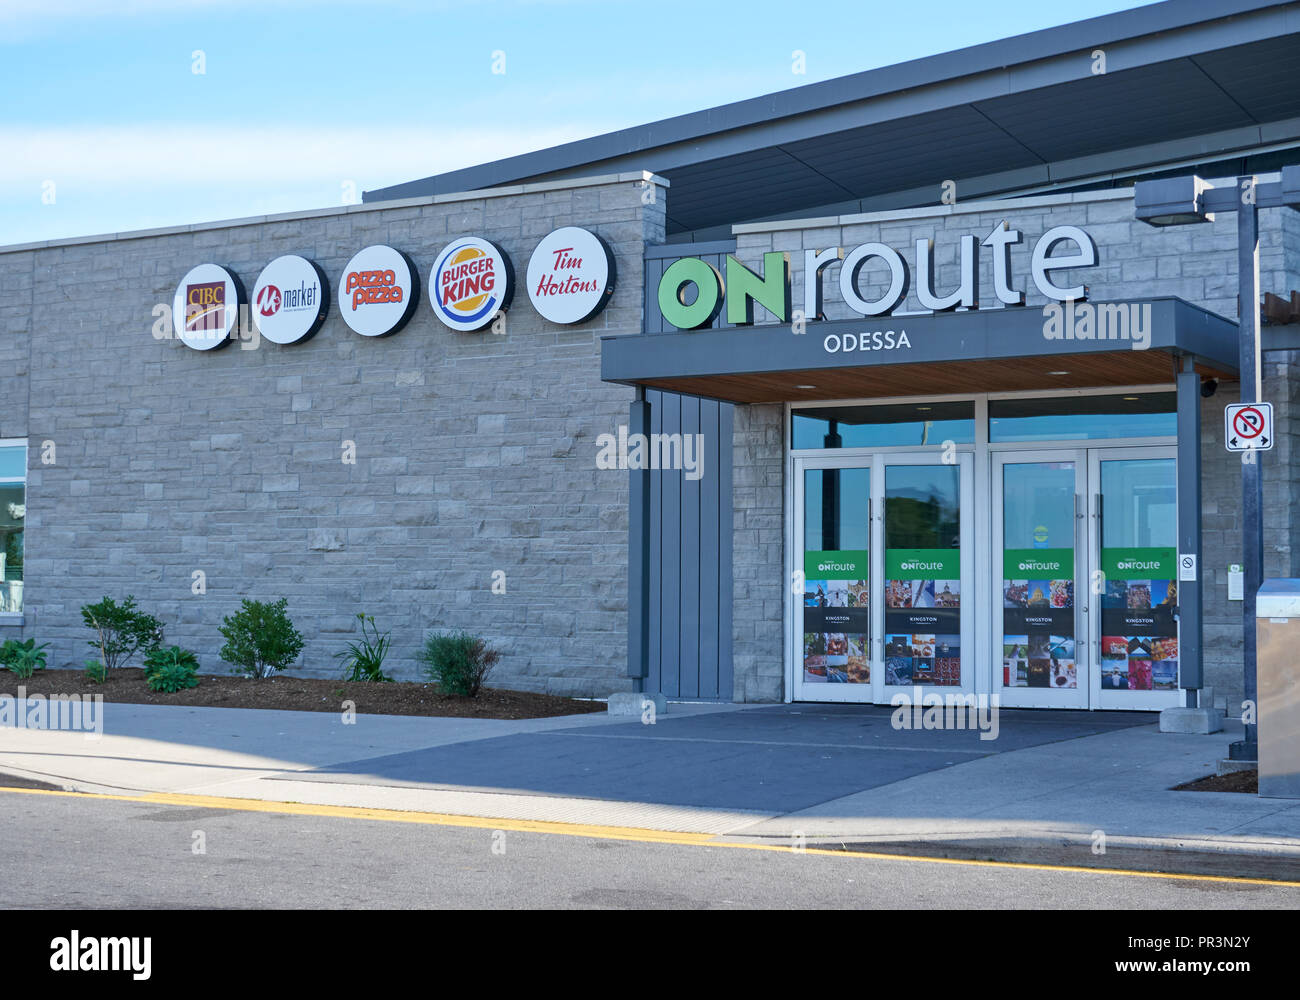 L'ONTARIO, CANADA - 12 juillet 2018 : service ONroute et bâtiment. Service ONroute est une société canadienne qui exploite l'autoroute aires de repos le long de l'autoroute 40 Banque D'Images